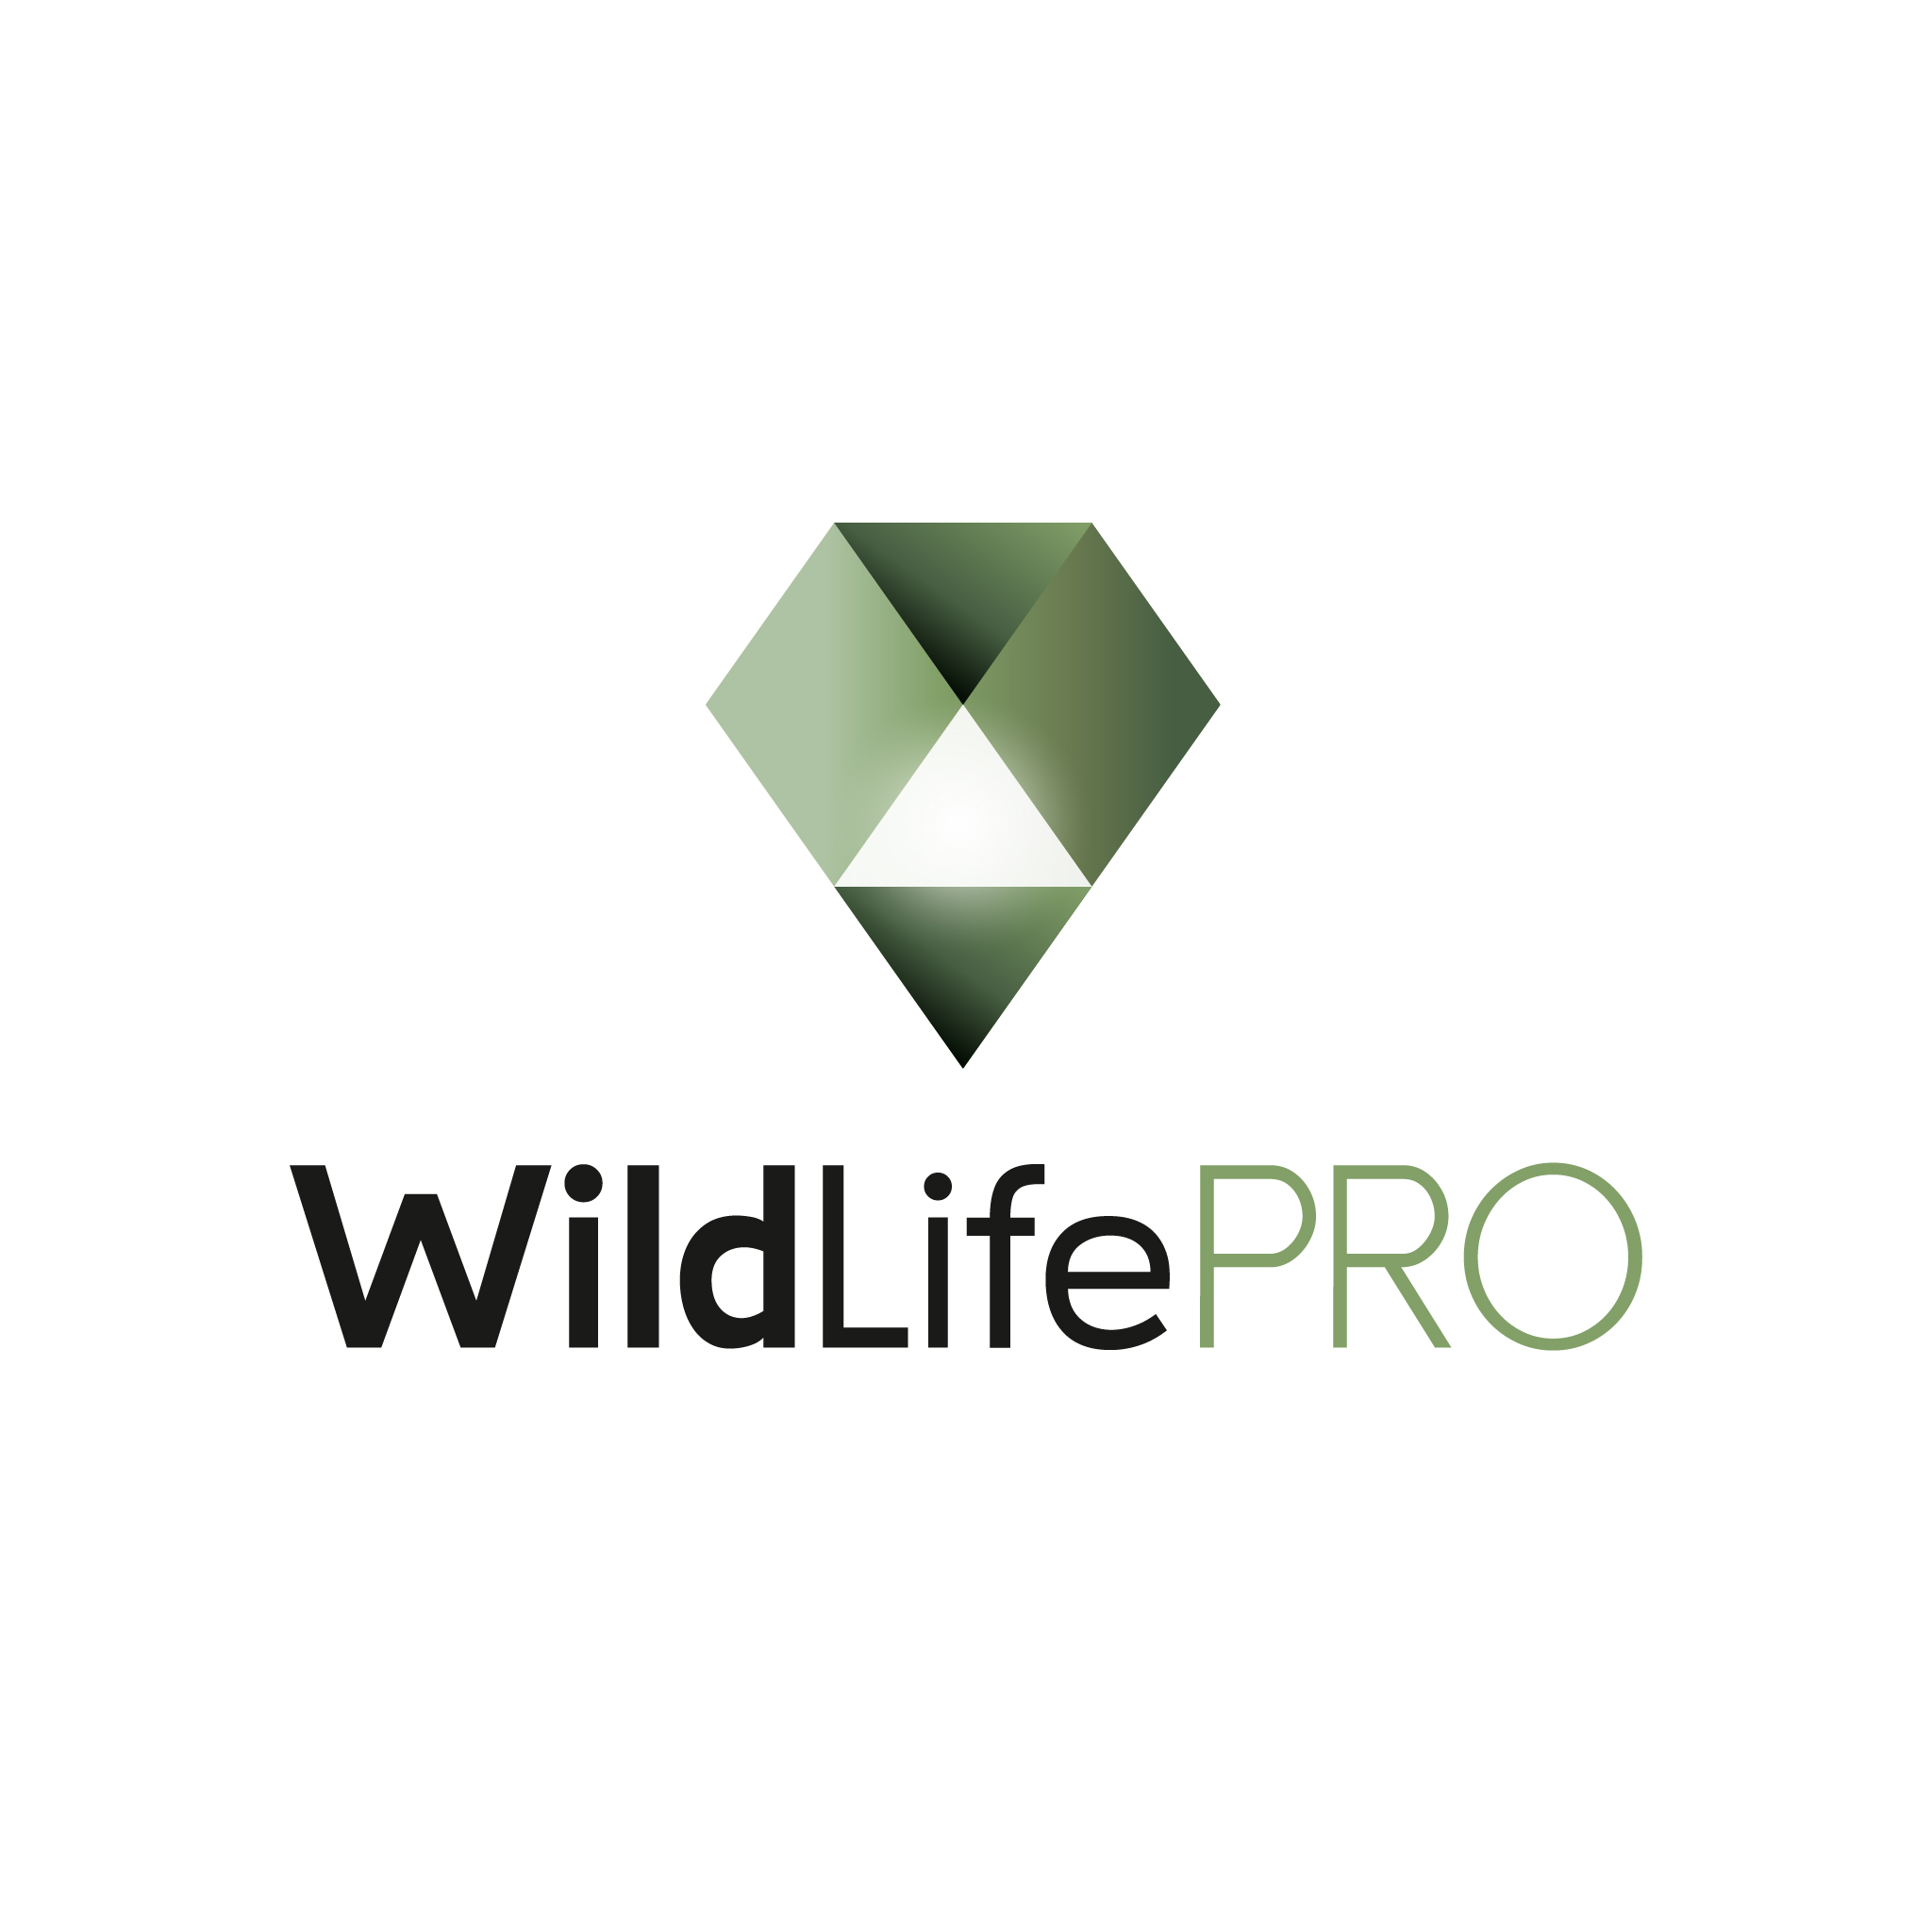 WildLifePro logo